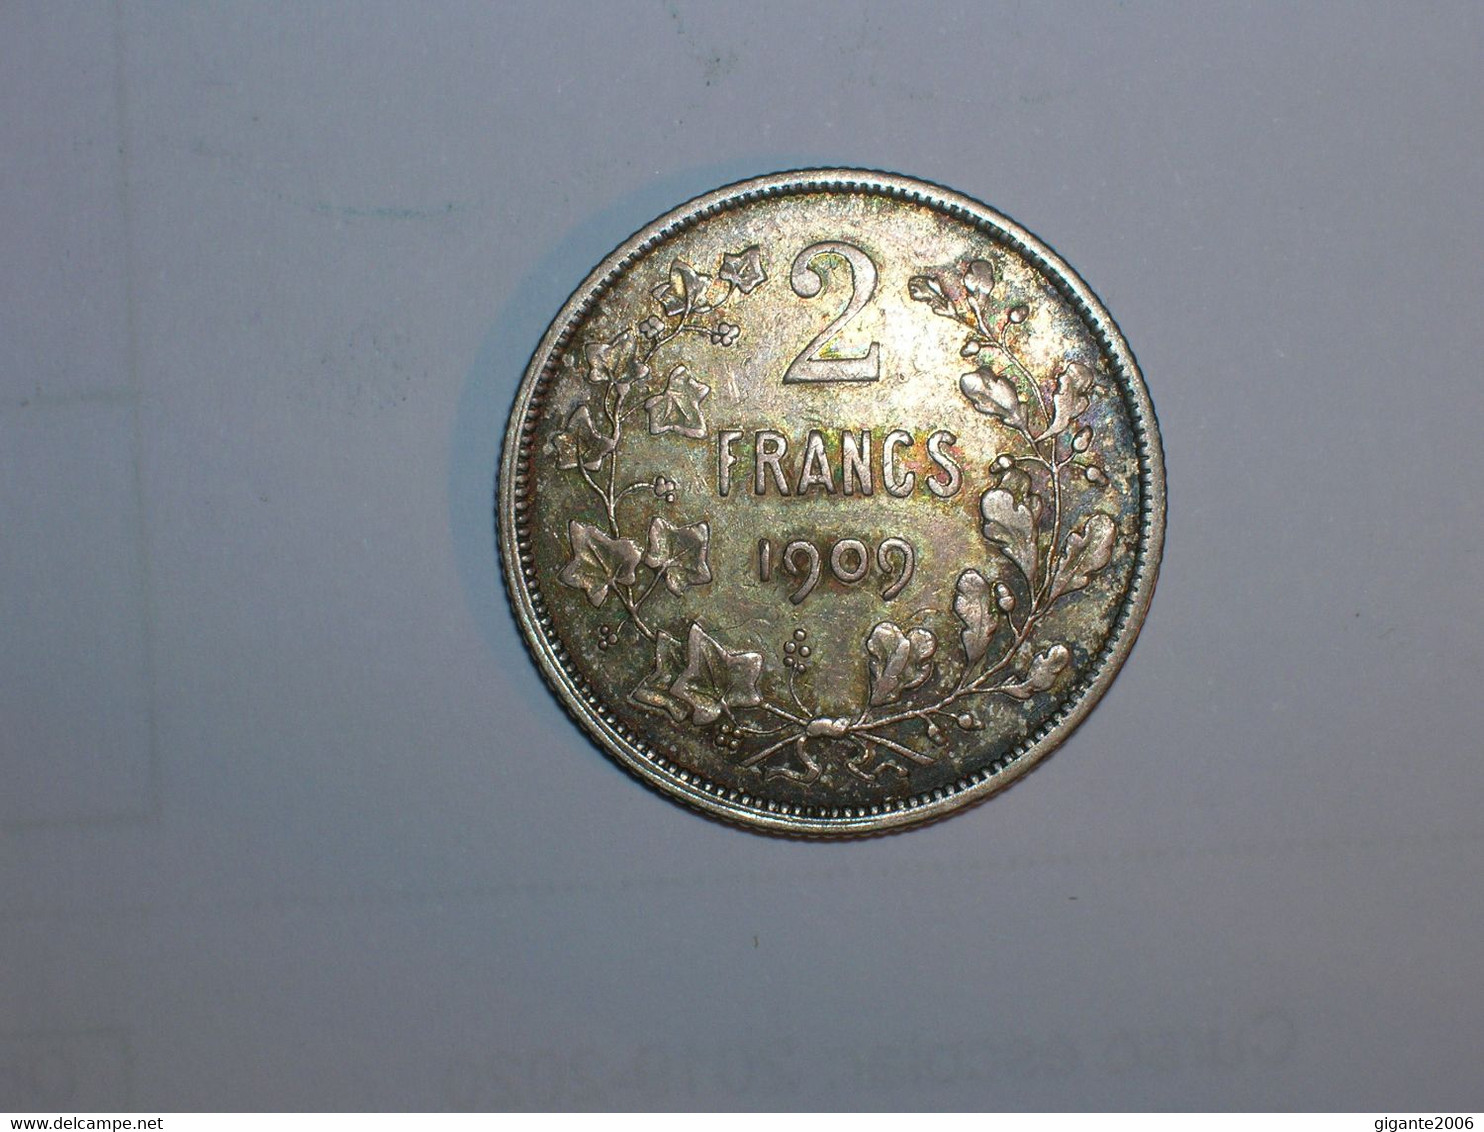 BELGICA 2 FRANCOS 1909 BELGES (5549) - 2 Francs